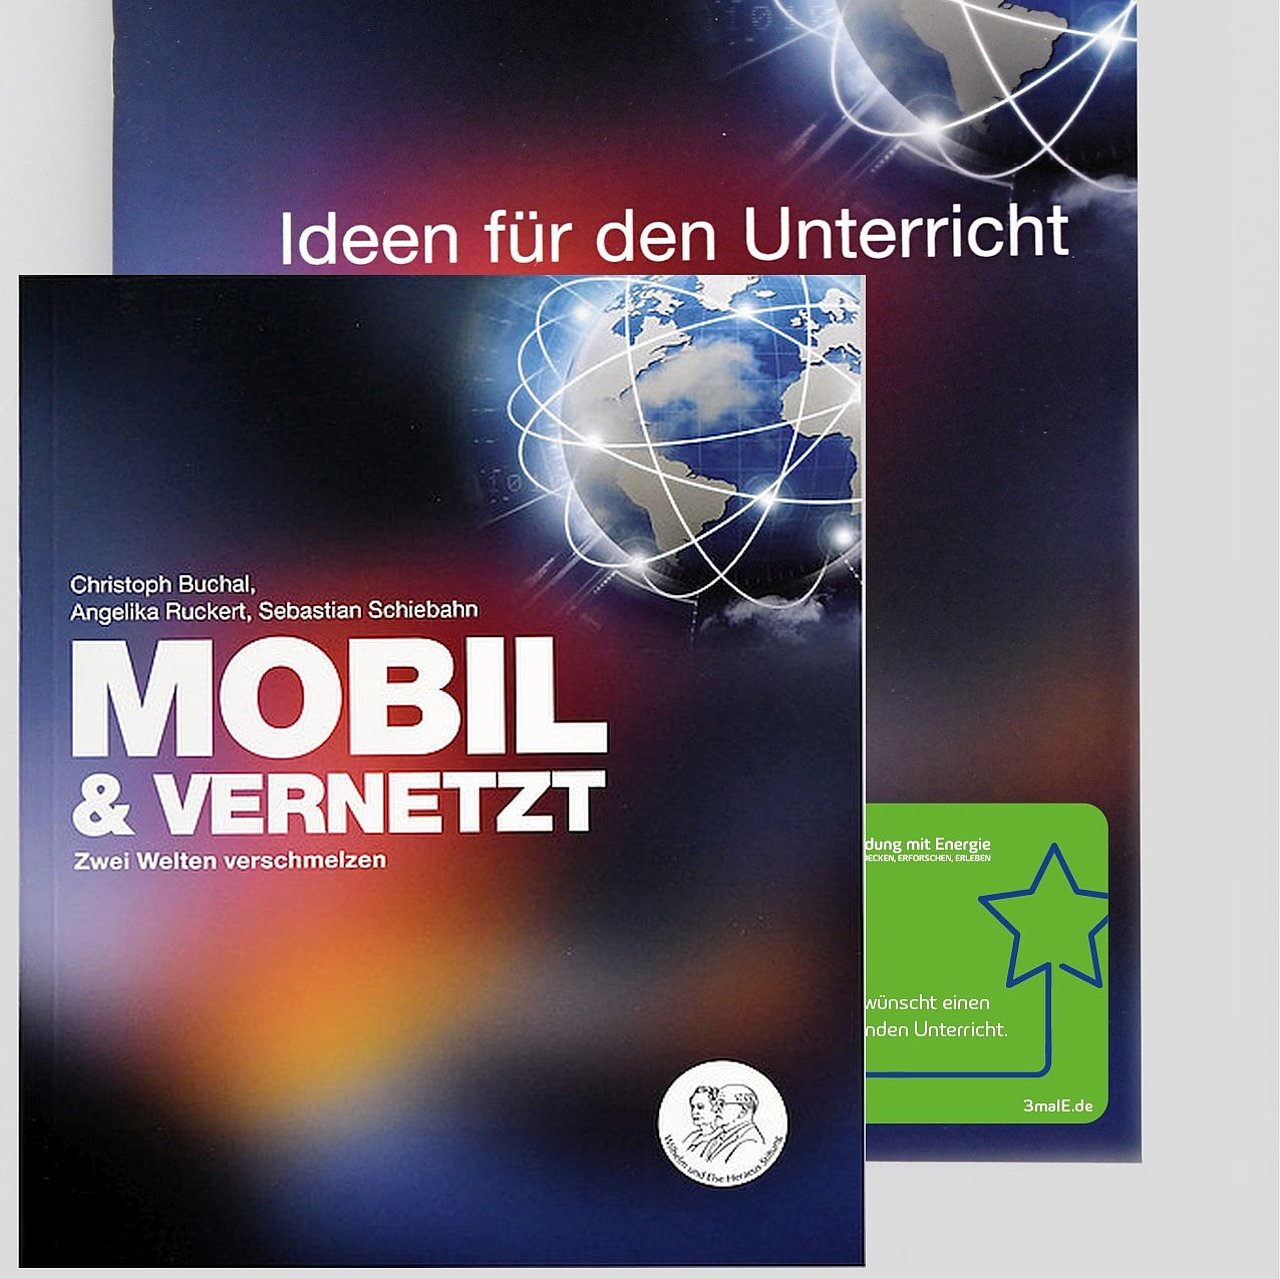 Paket: Sachbuch und Ideenheft „Mobil und vernetzt“